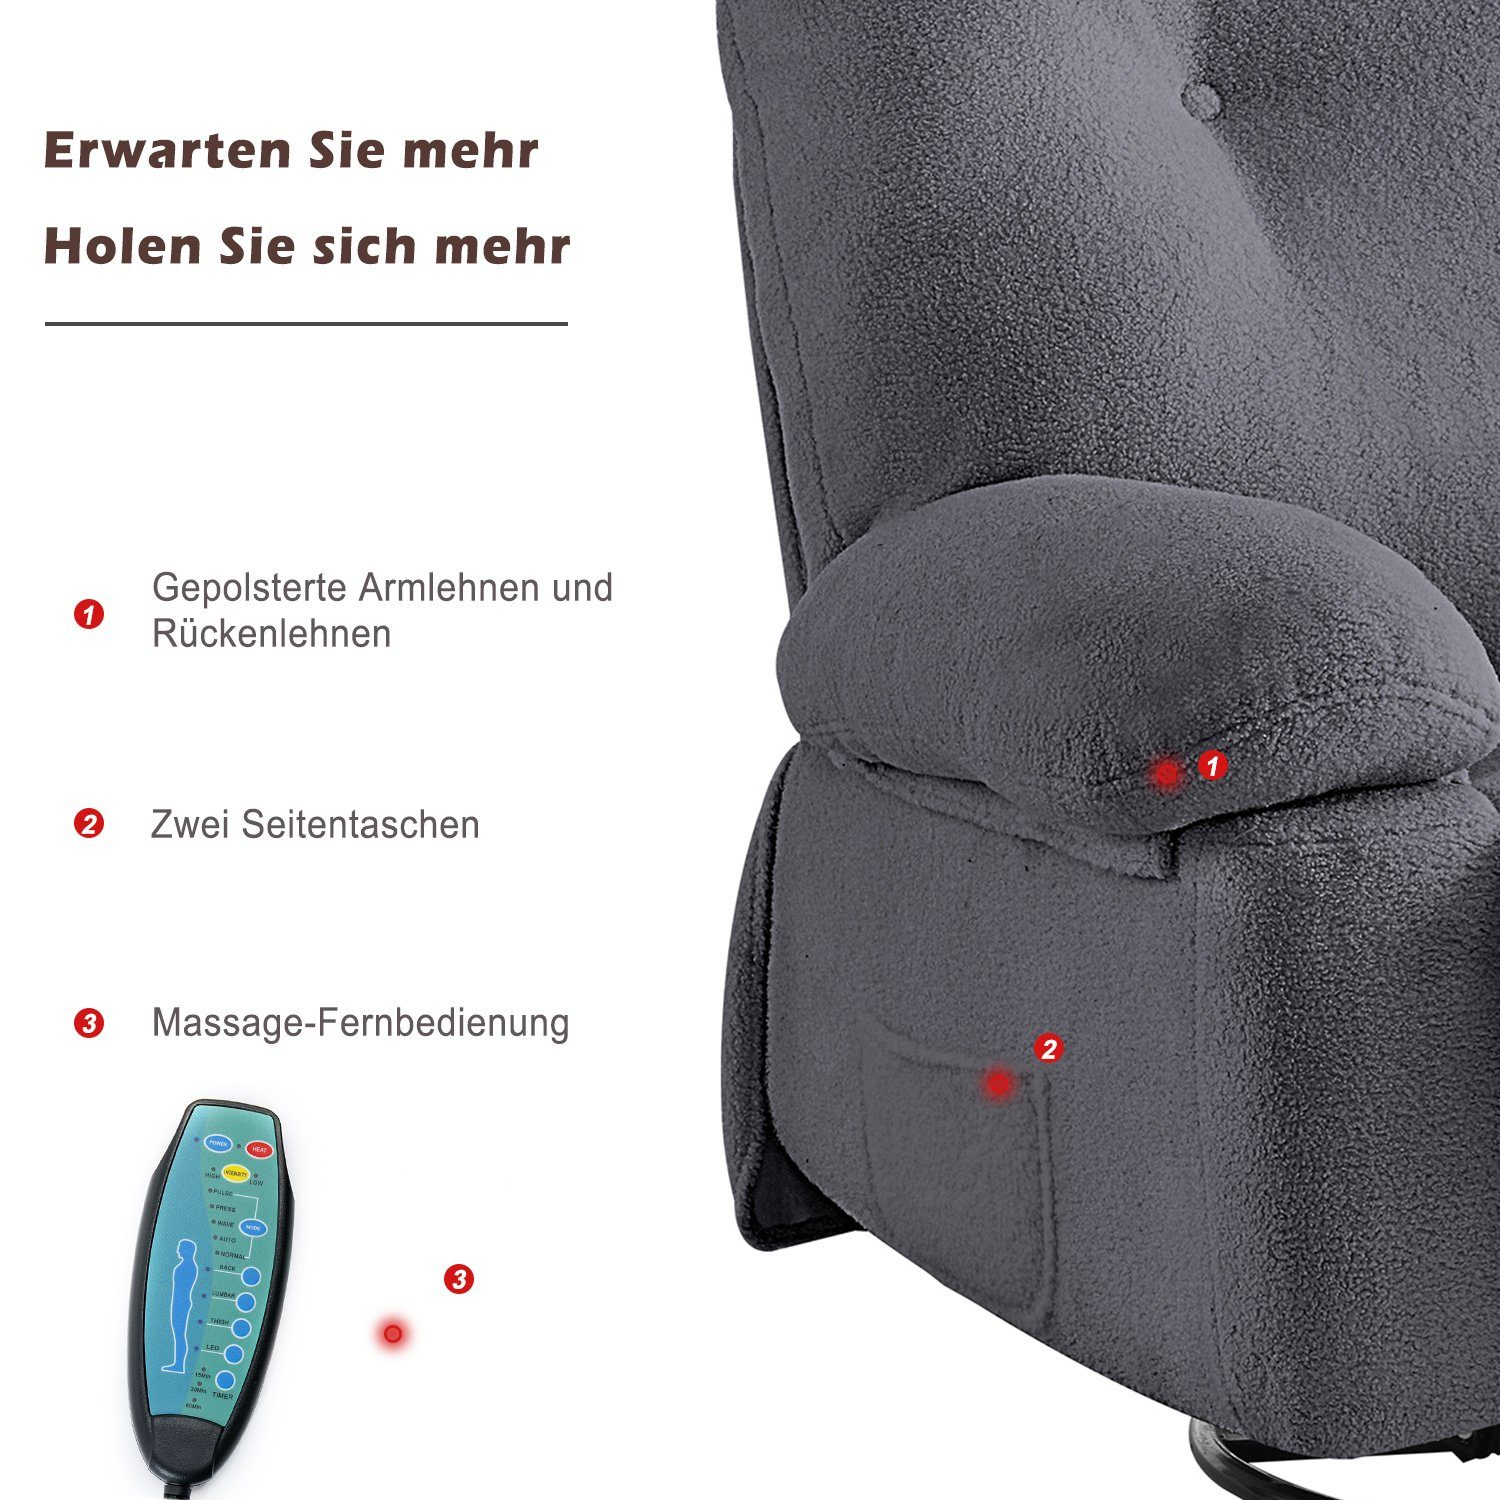 OKWISH TV-Sessel Relaxsessel mit Fernbedienung Heimkino-Loungesesse), 360° Timer Drehfunktion Grau (Wohnzimmersessel, mit und